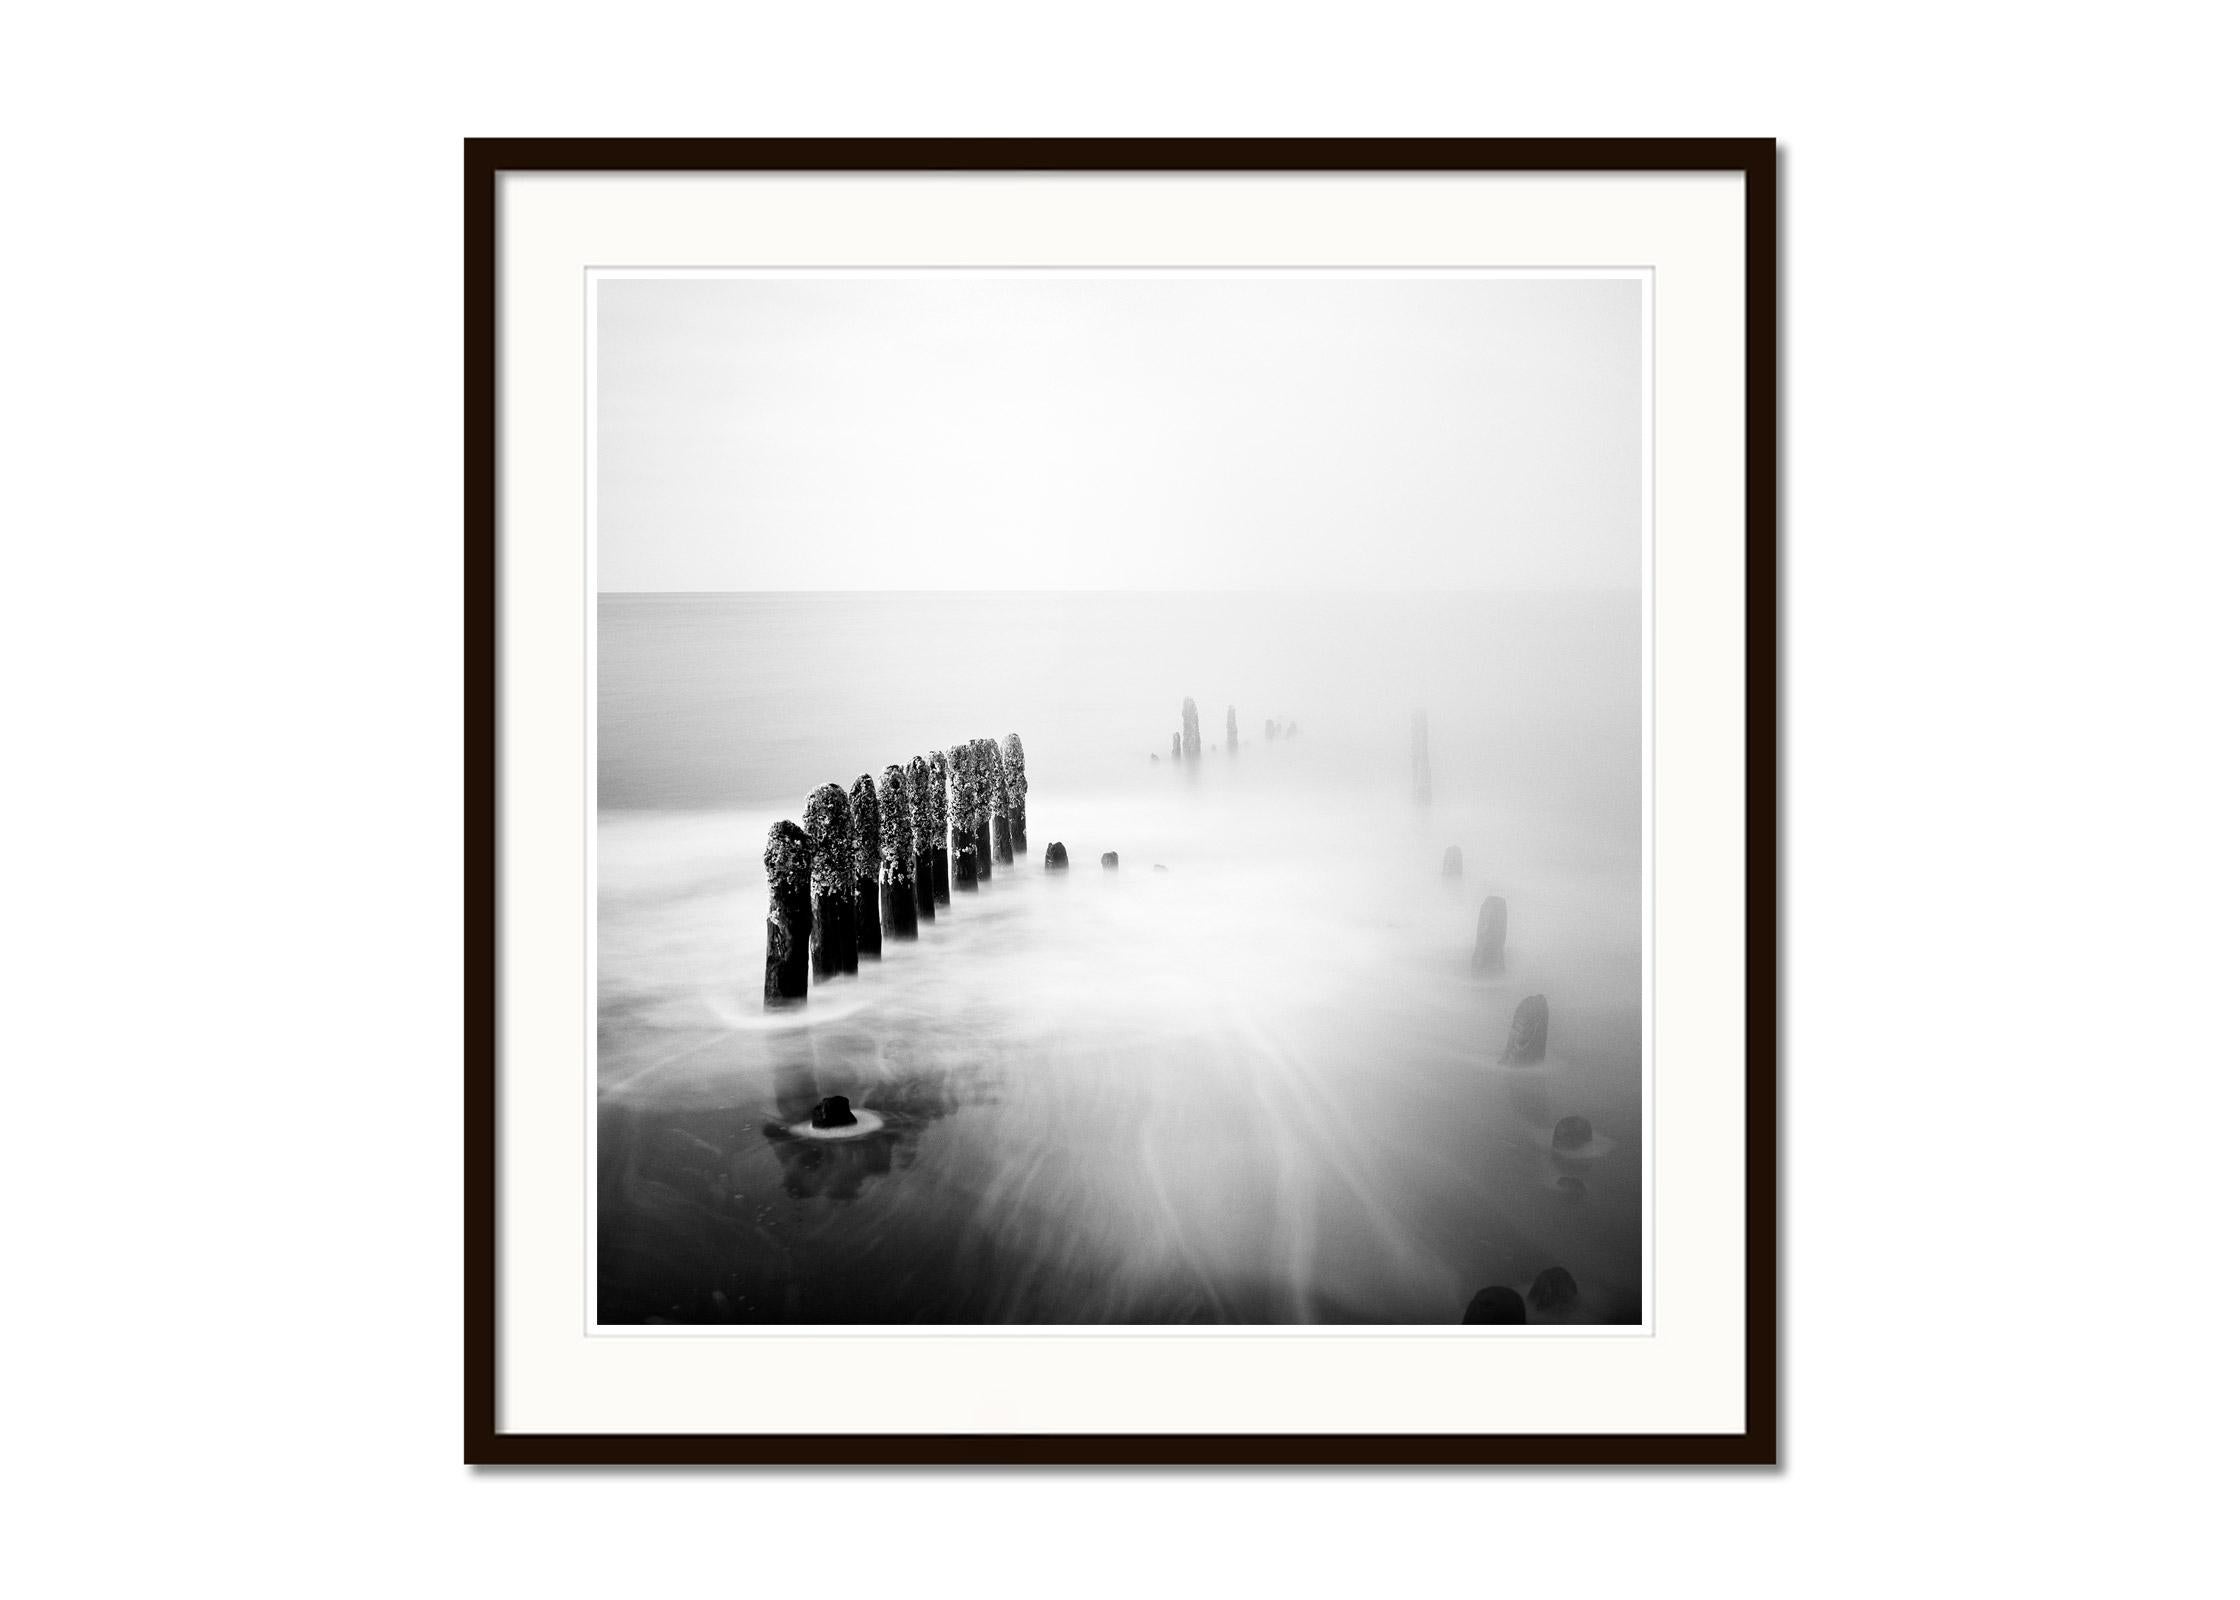 Spargelzeit, Ruegen, Deutschland, minimalistischer, schwarz-weißer Landschaftsdruck (Grau), Black and White Photograph, von Gerald Berghammer